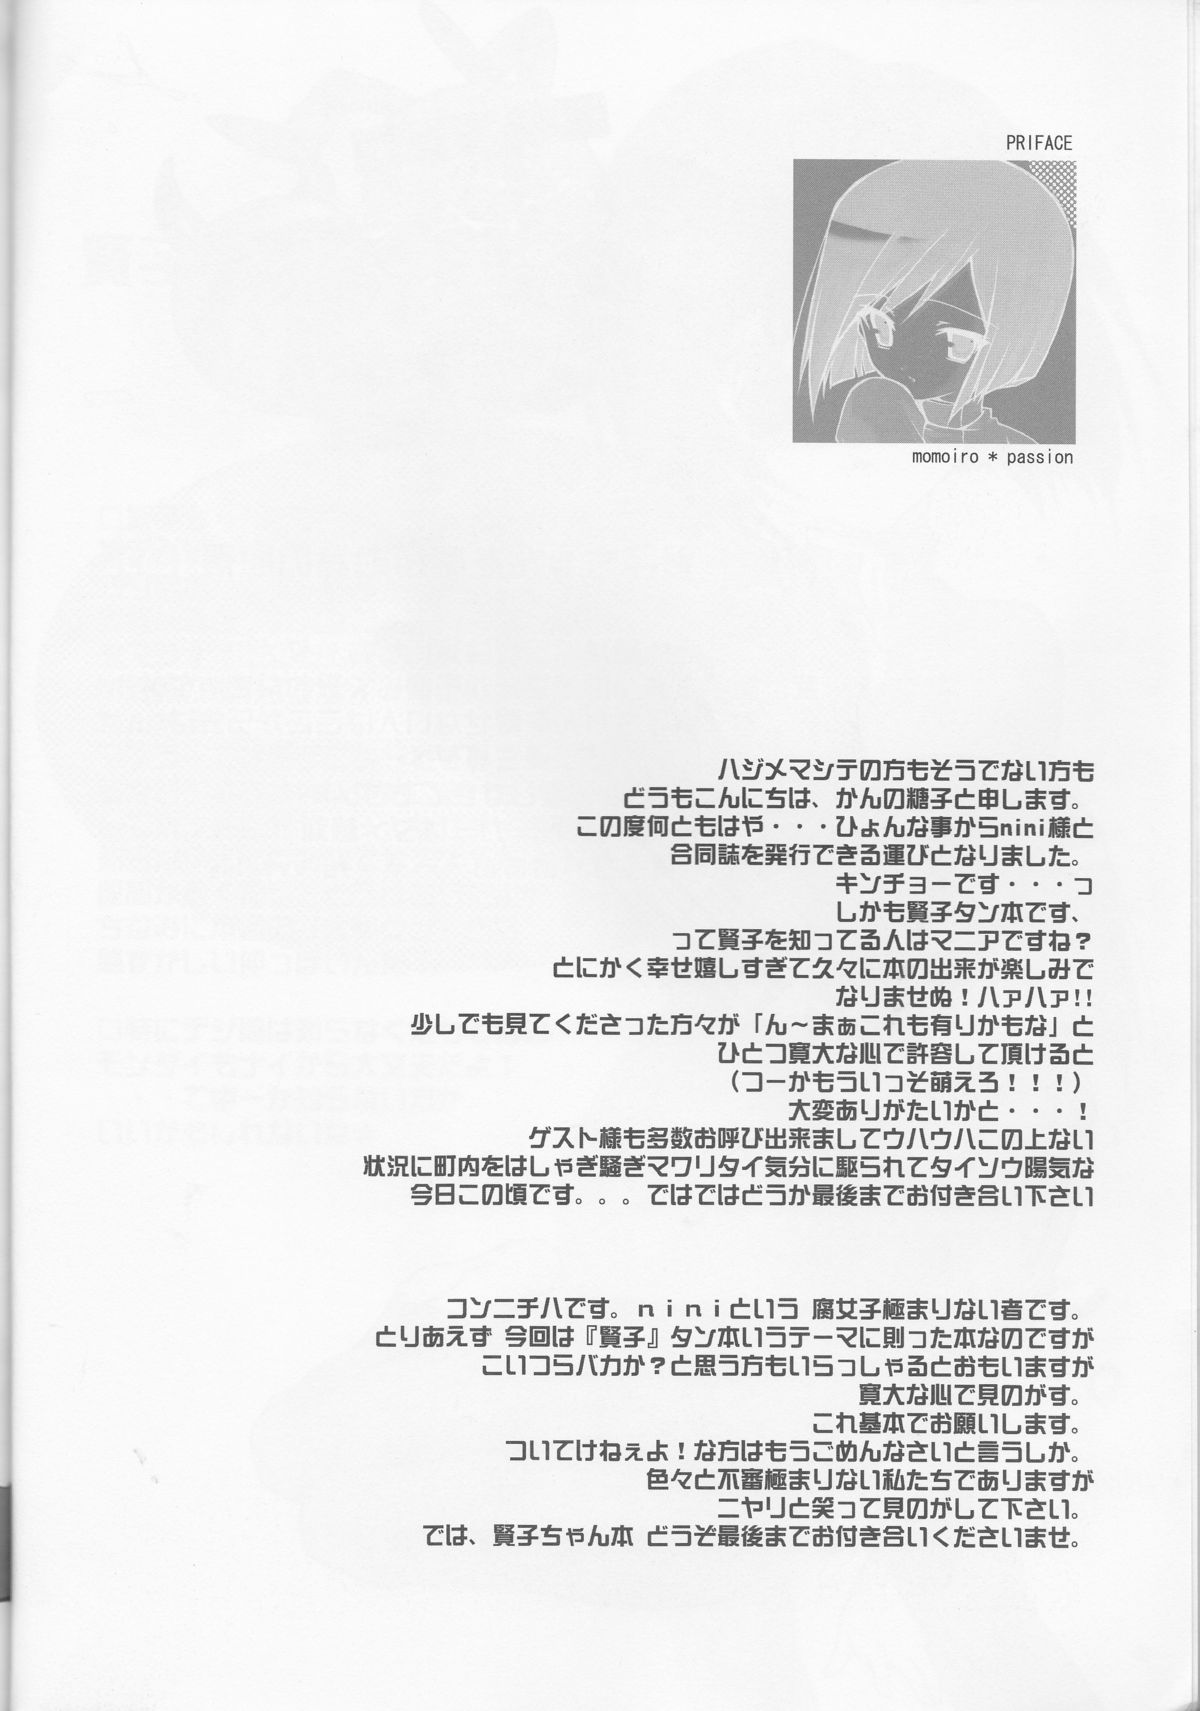 (CR32) [DELTA (nini)] MOMOIRO PASSION (Digimon Adventure 02) page 6 full